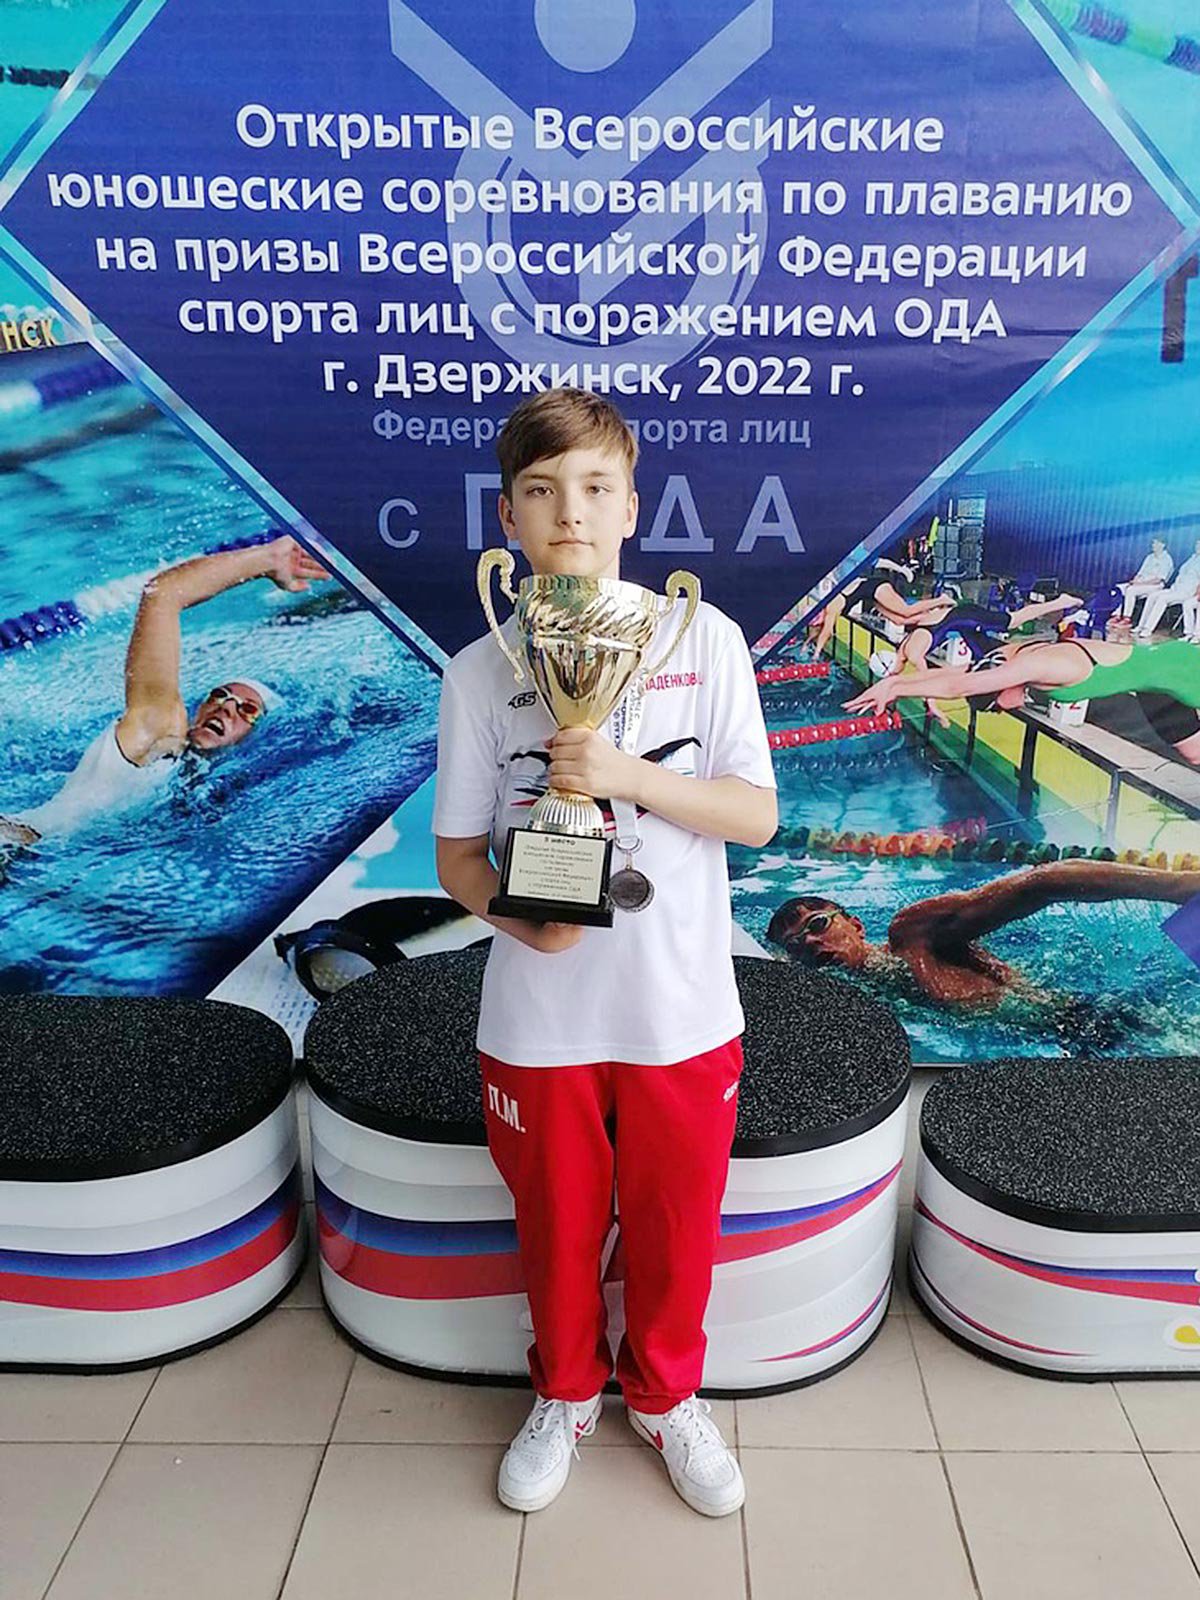 Выксунский пловец завоевал три серебра и бронзу на всероссийских соревнованиях